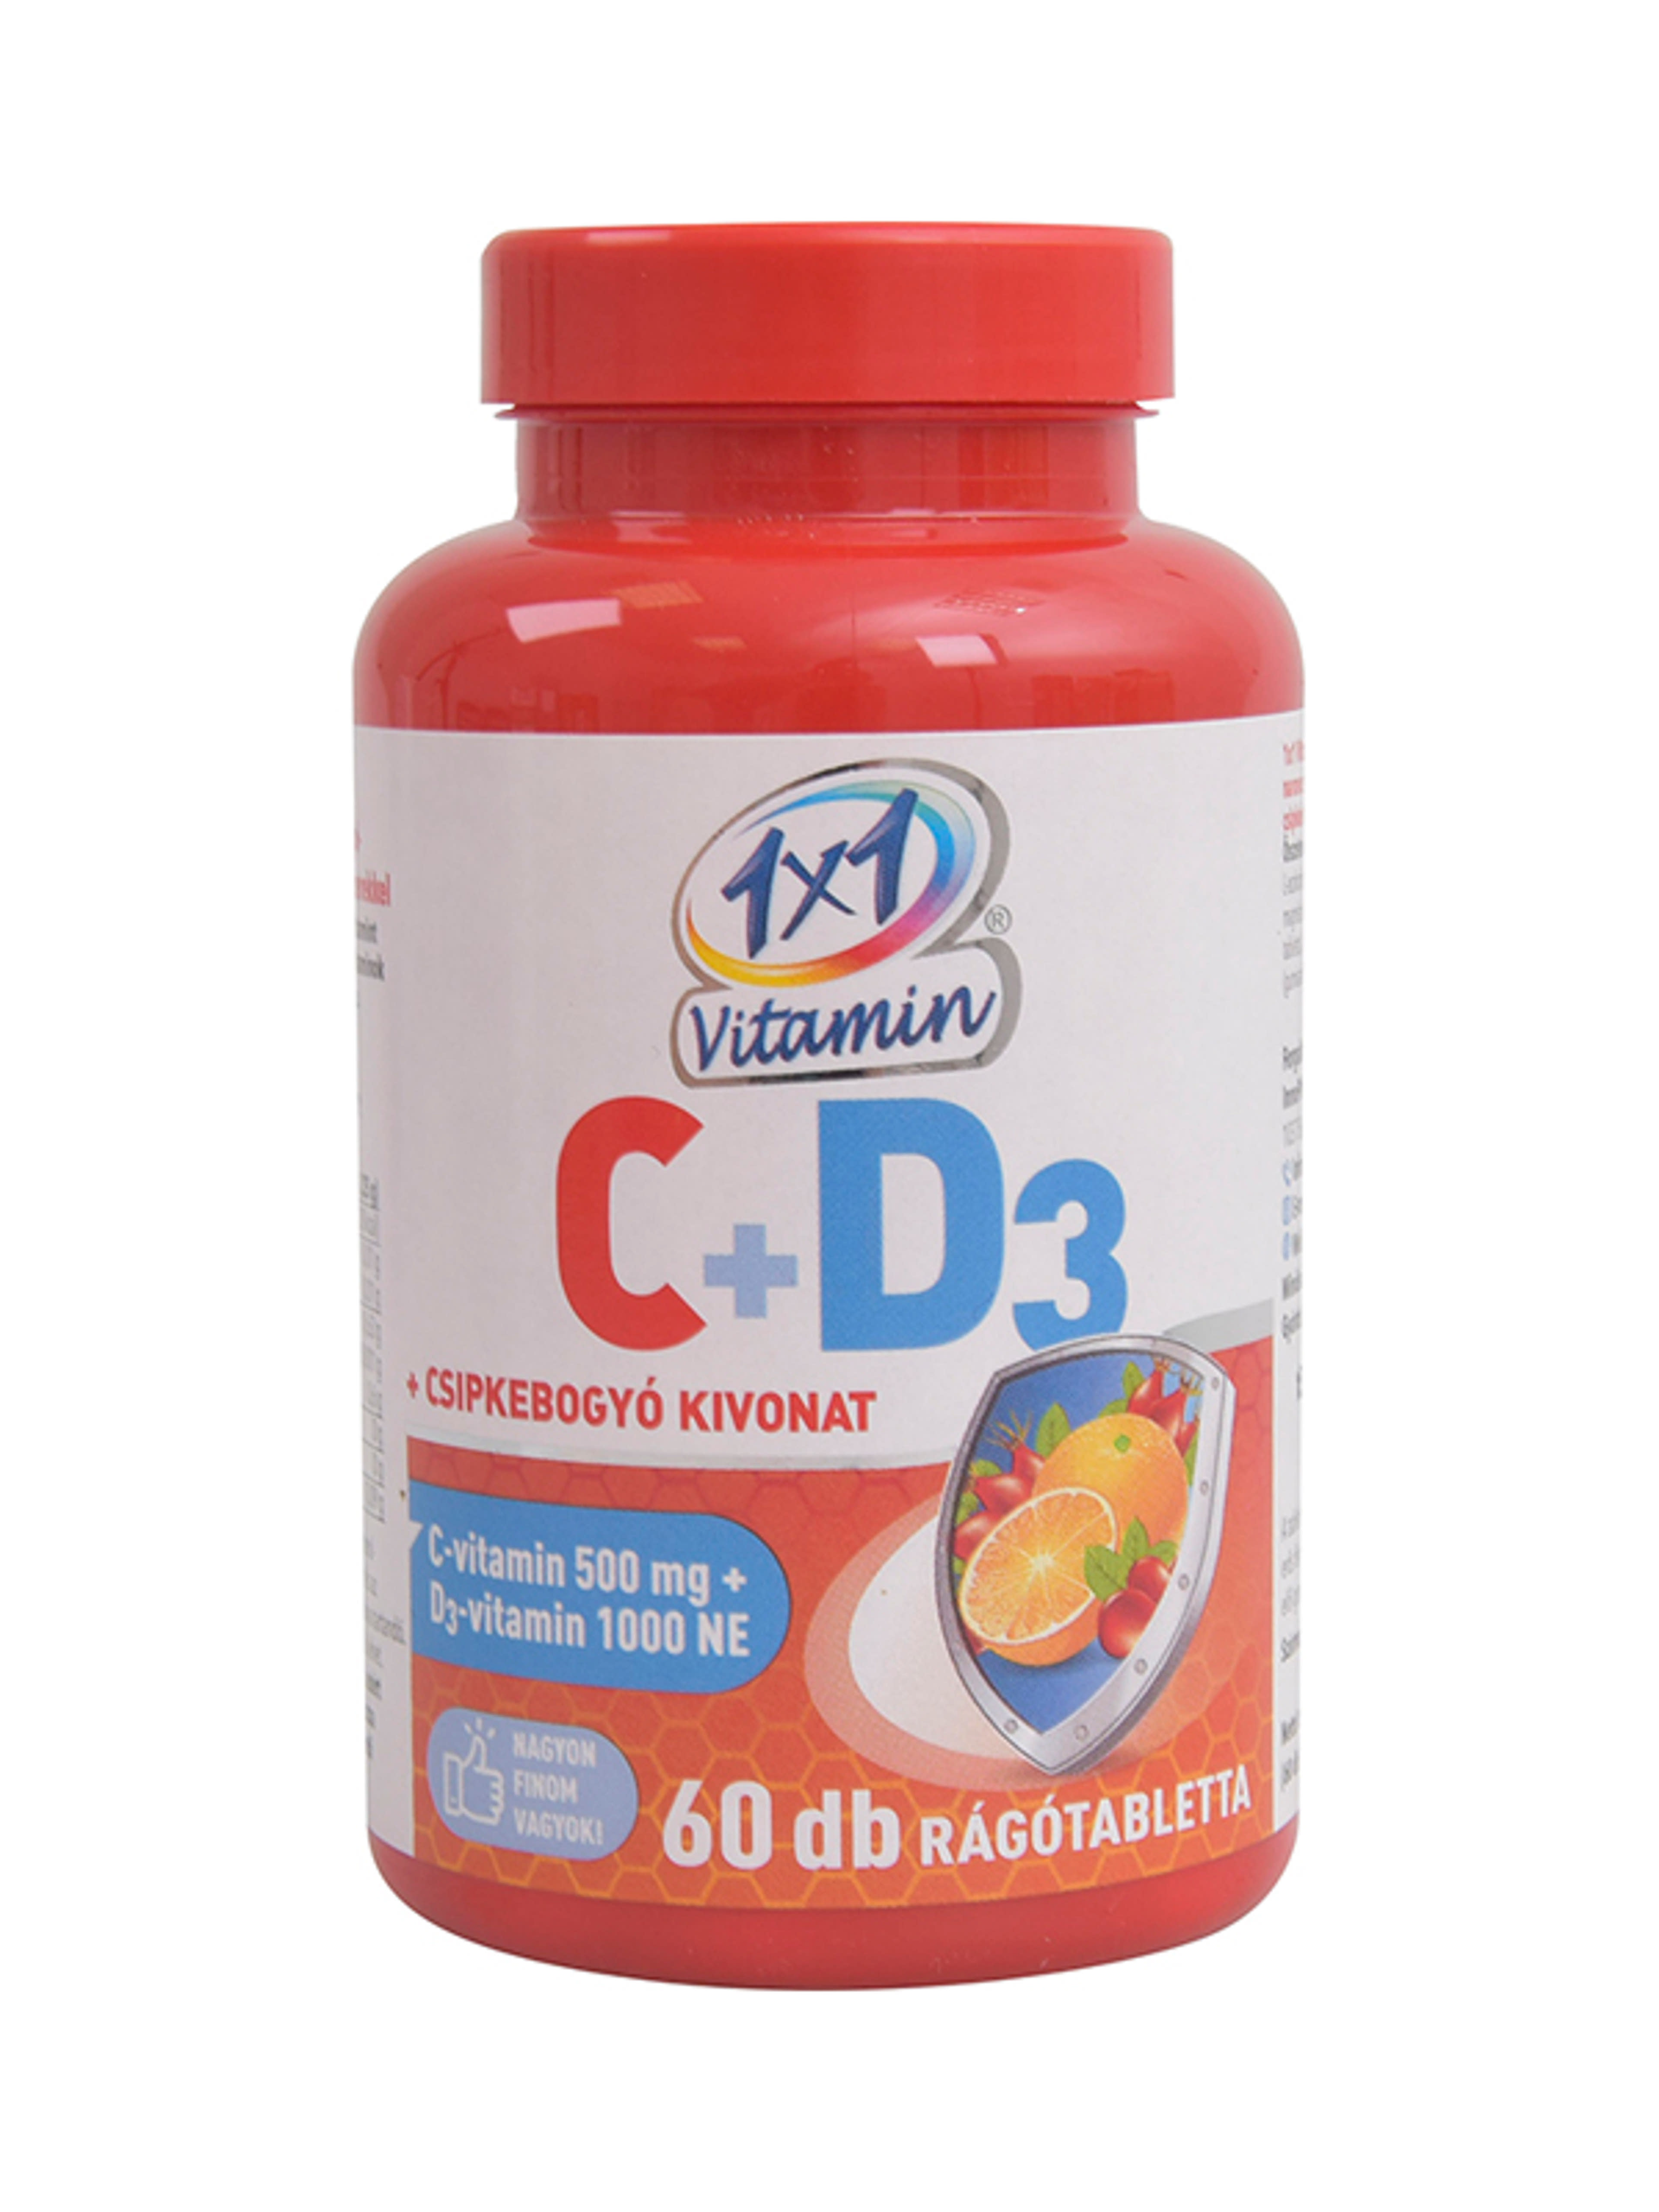 1x1 vitamin C-vitamin+D3+csipkebogyó rágótabletta - 60 db-1